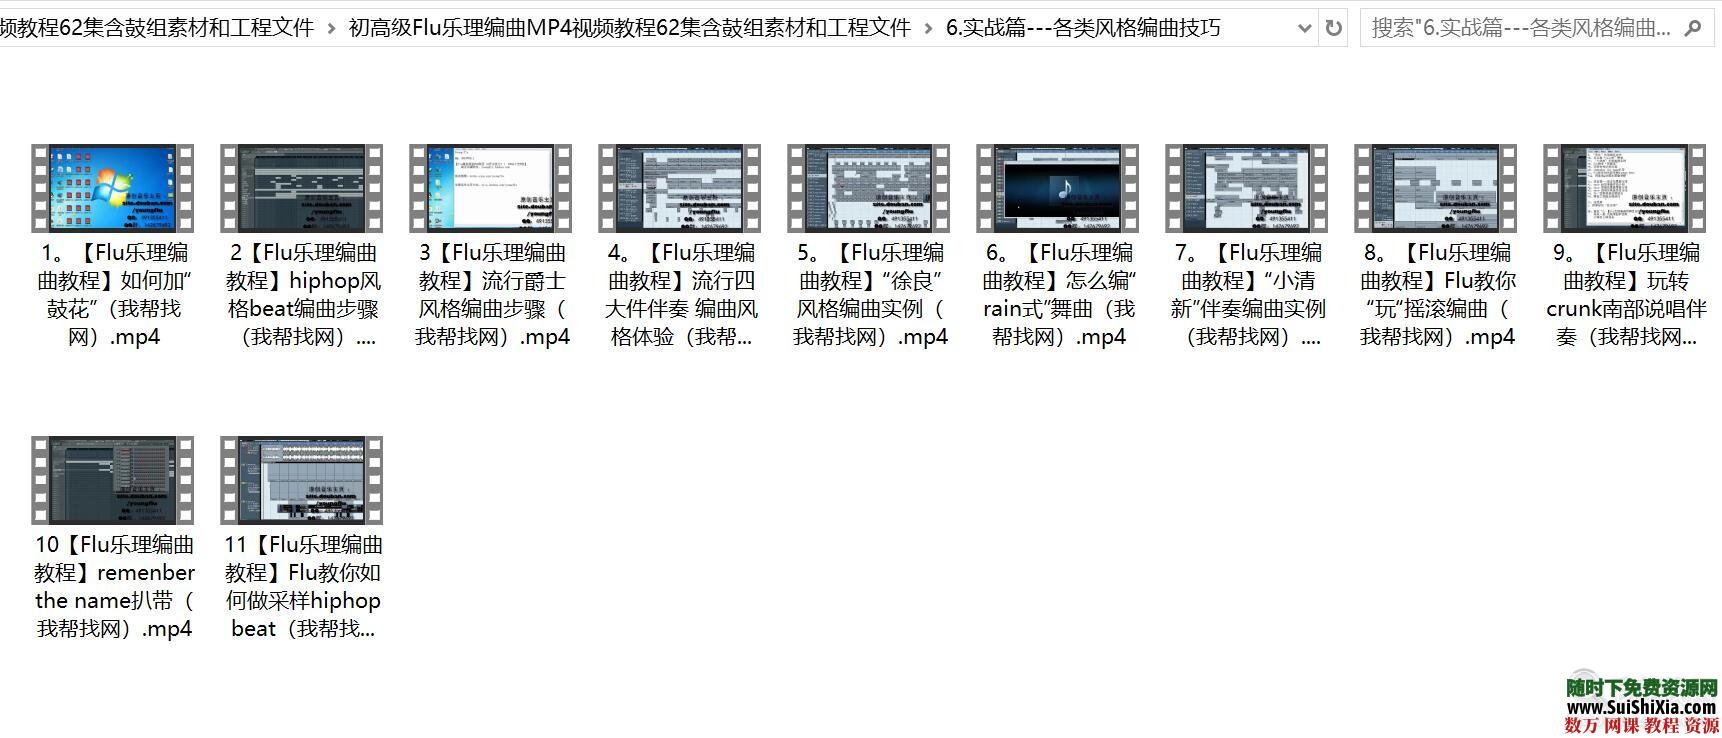 初高级Flu乐理编曲MP4视频教程62集含鼓组素材和工程文件 第7张